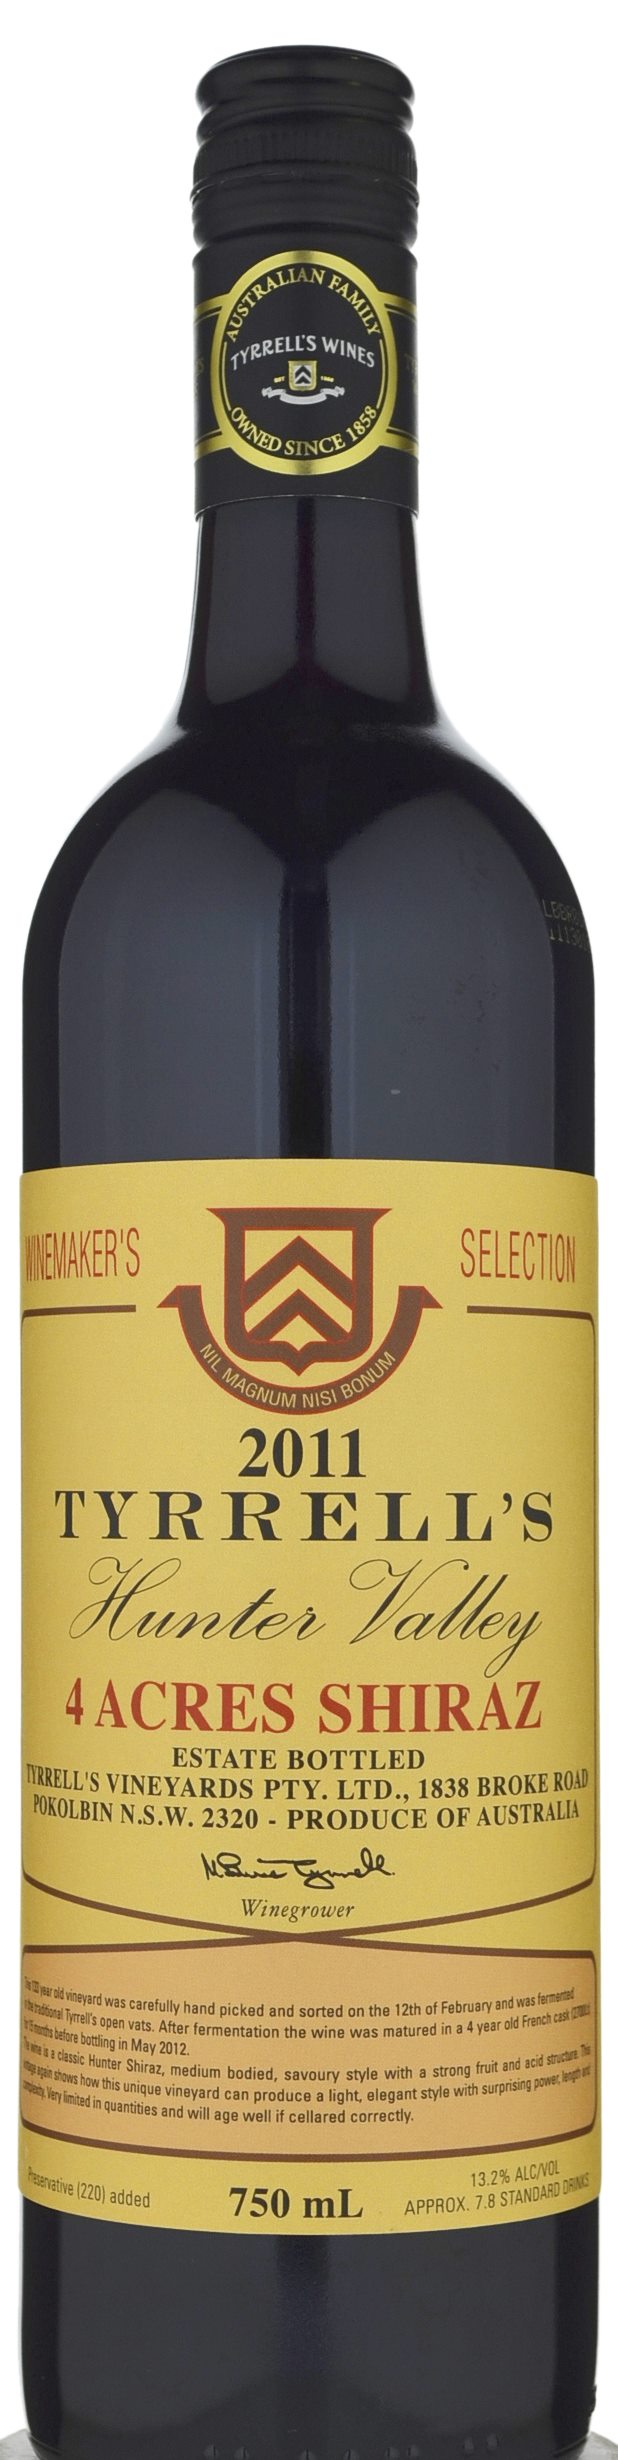 Tyrrell's Wines 4 Acres Shiraz 2011